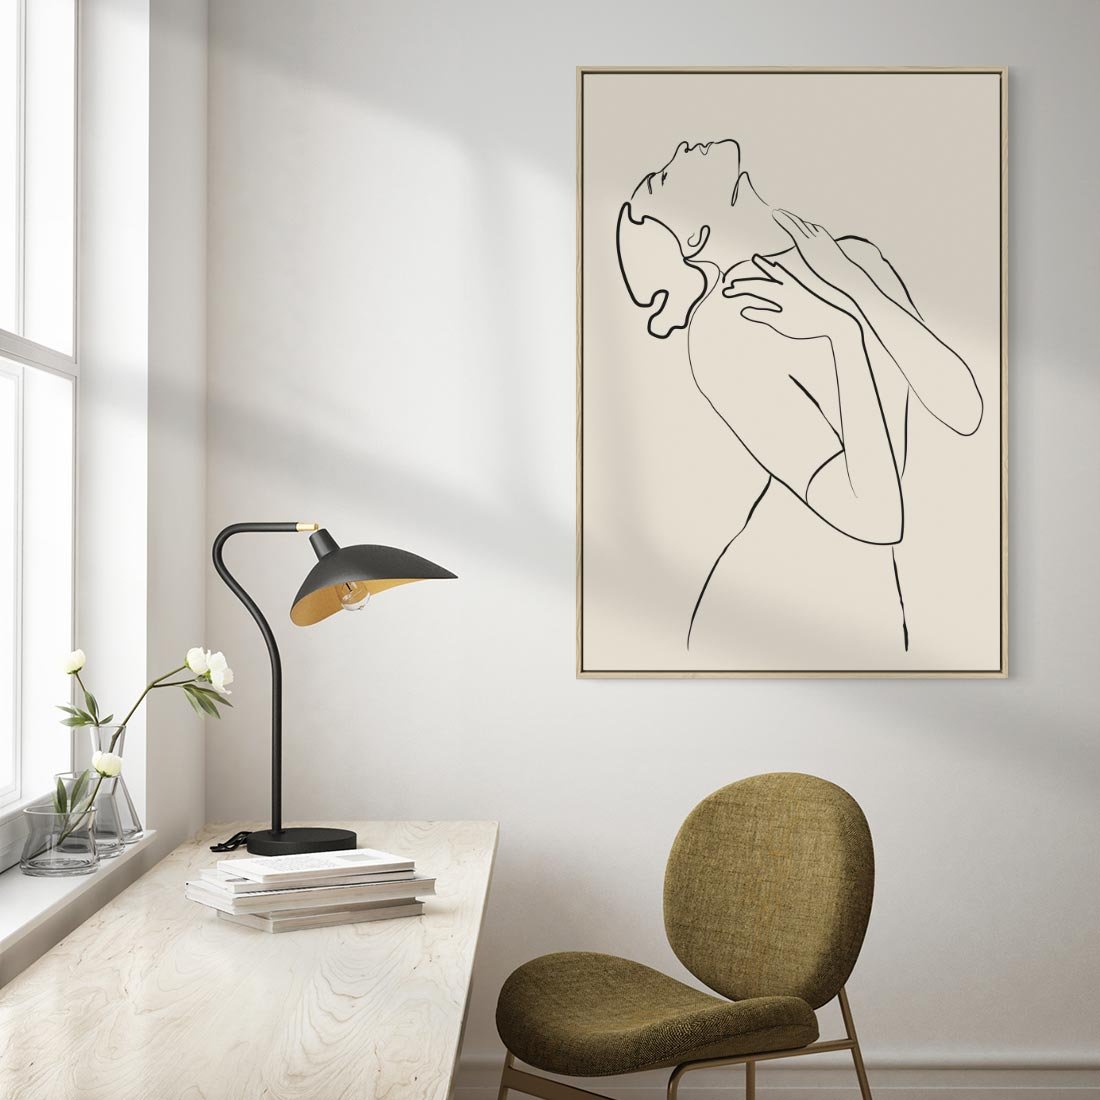 Obraz w ramie 50x70 - Bezkresny Taniec - kobieta, szkic - rama drewno